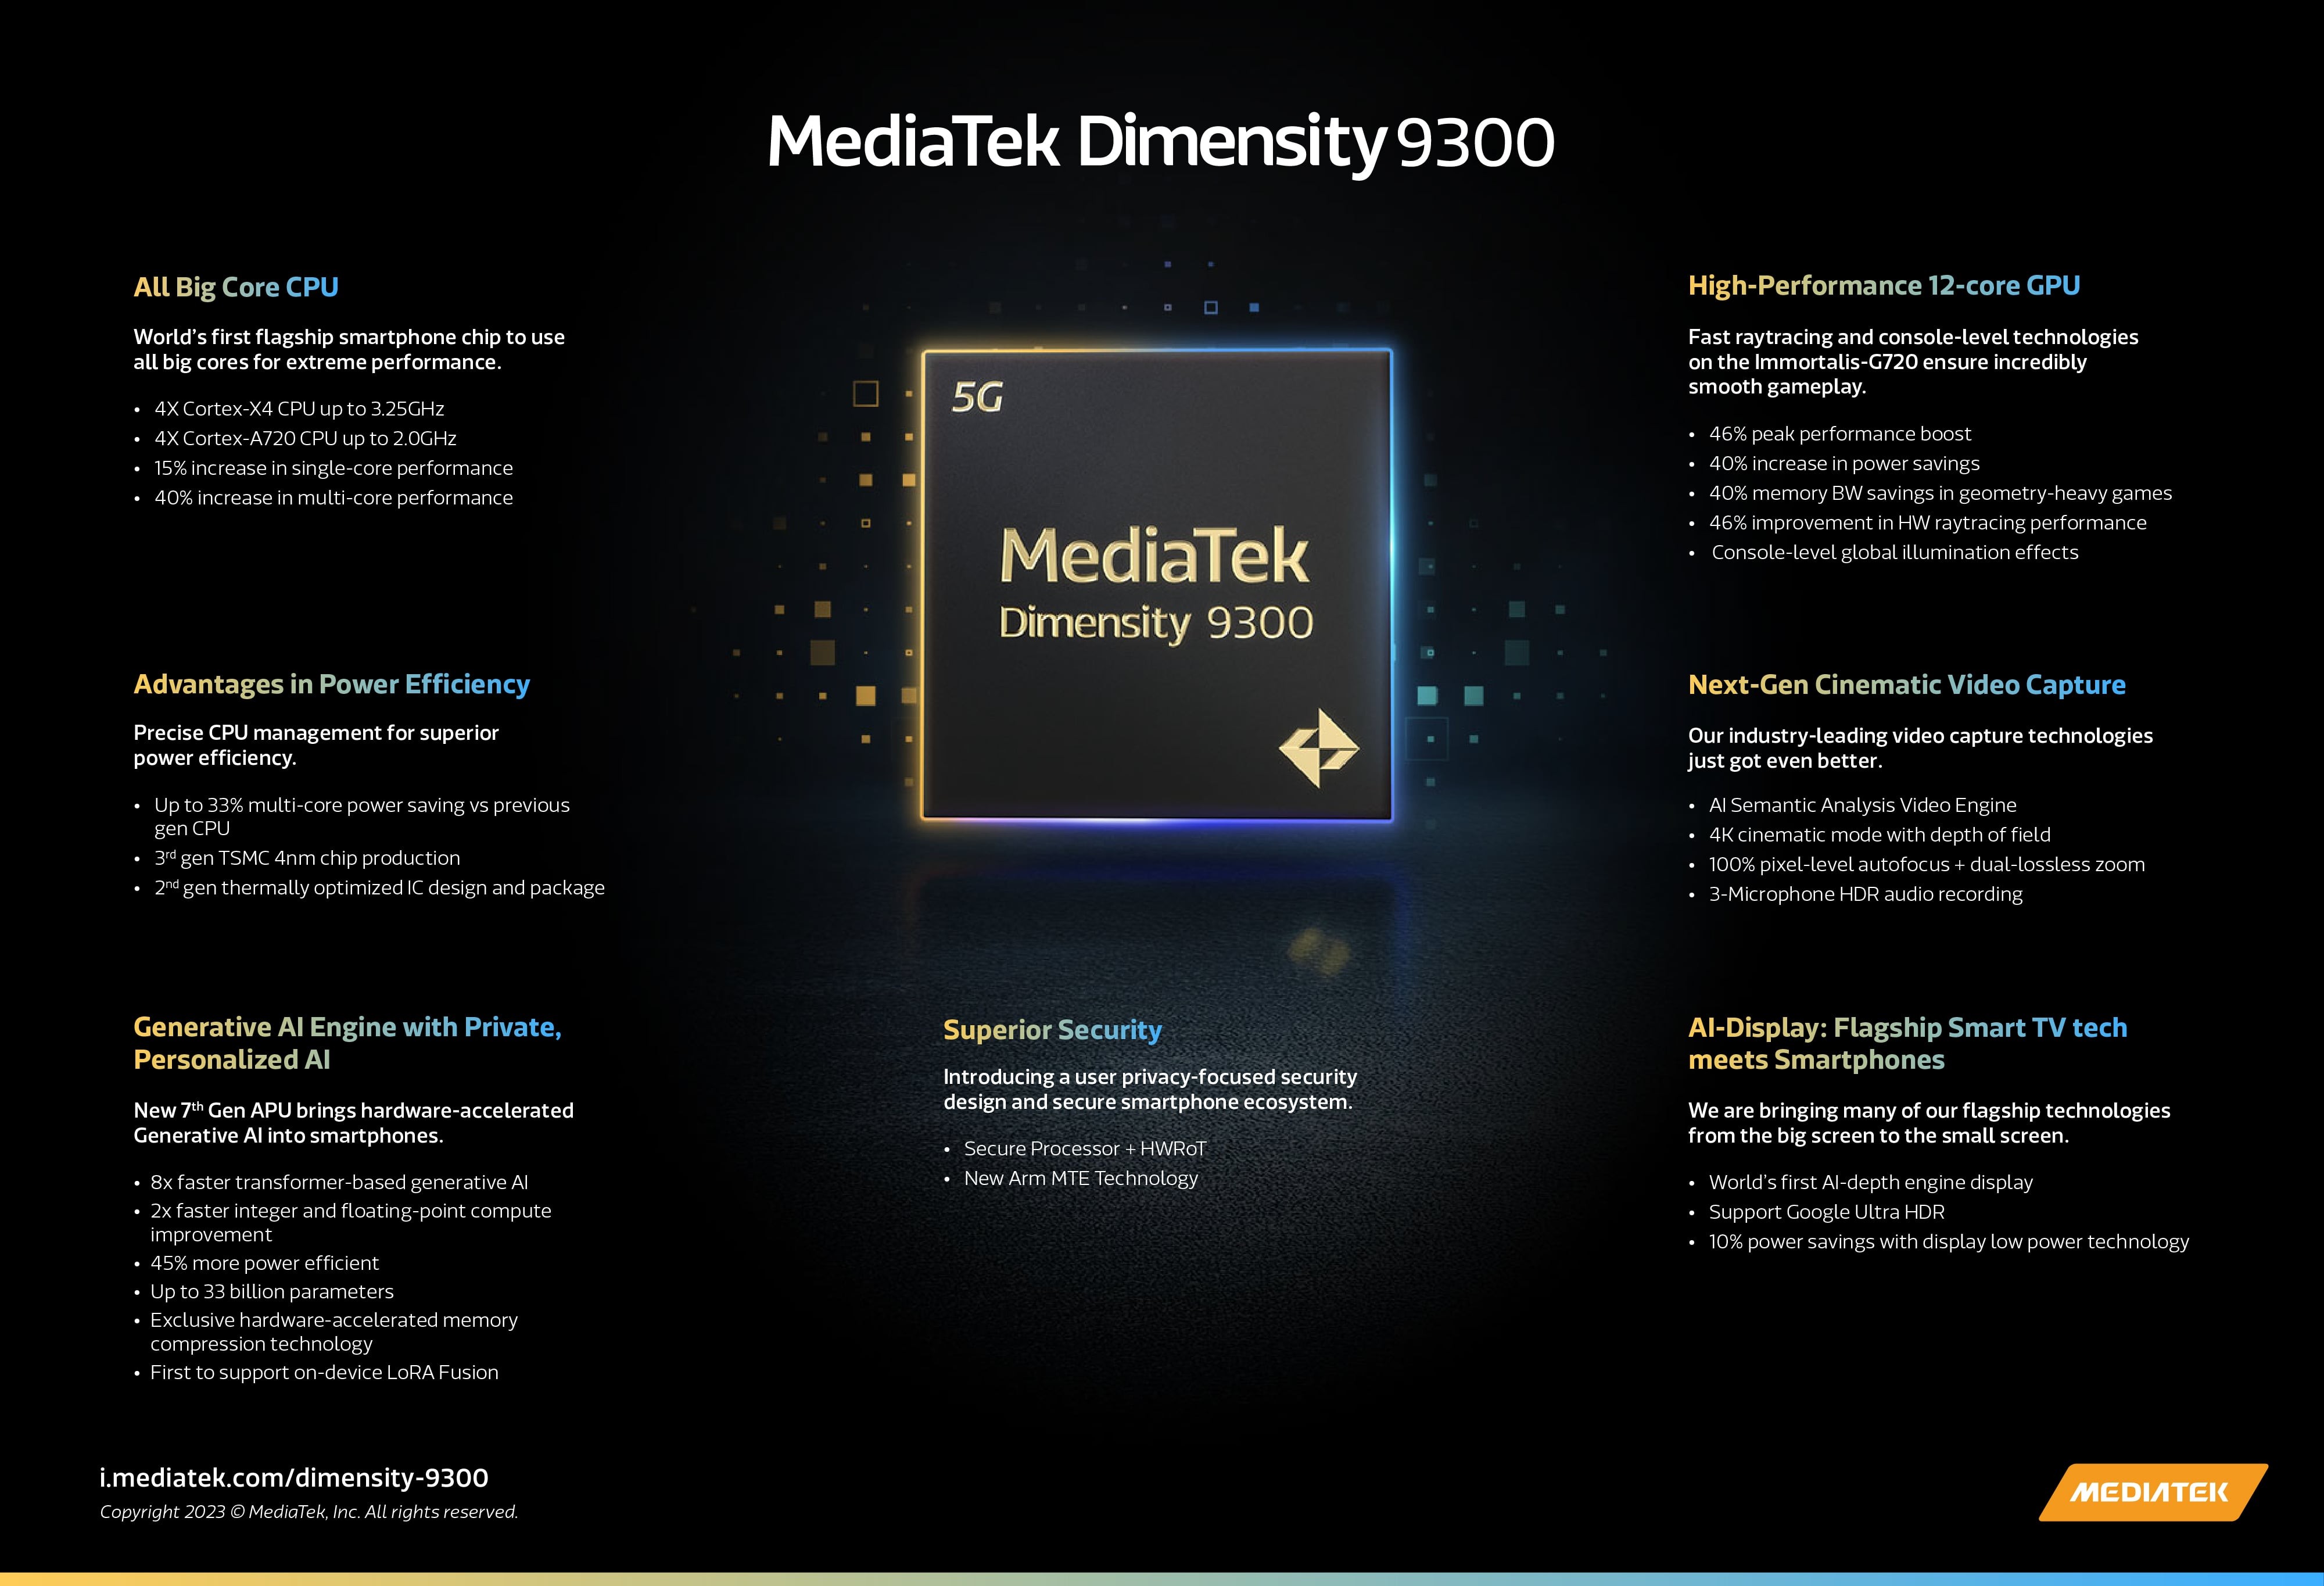 mediatek-dimensity-9300-infographic-min-1699328366.jpg